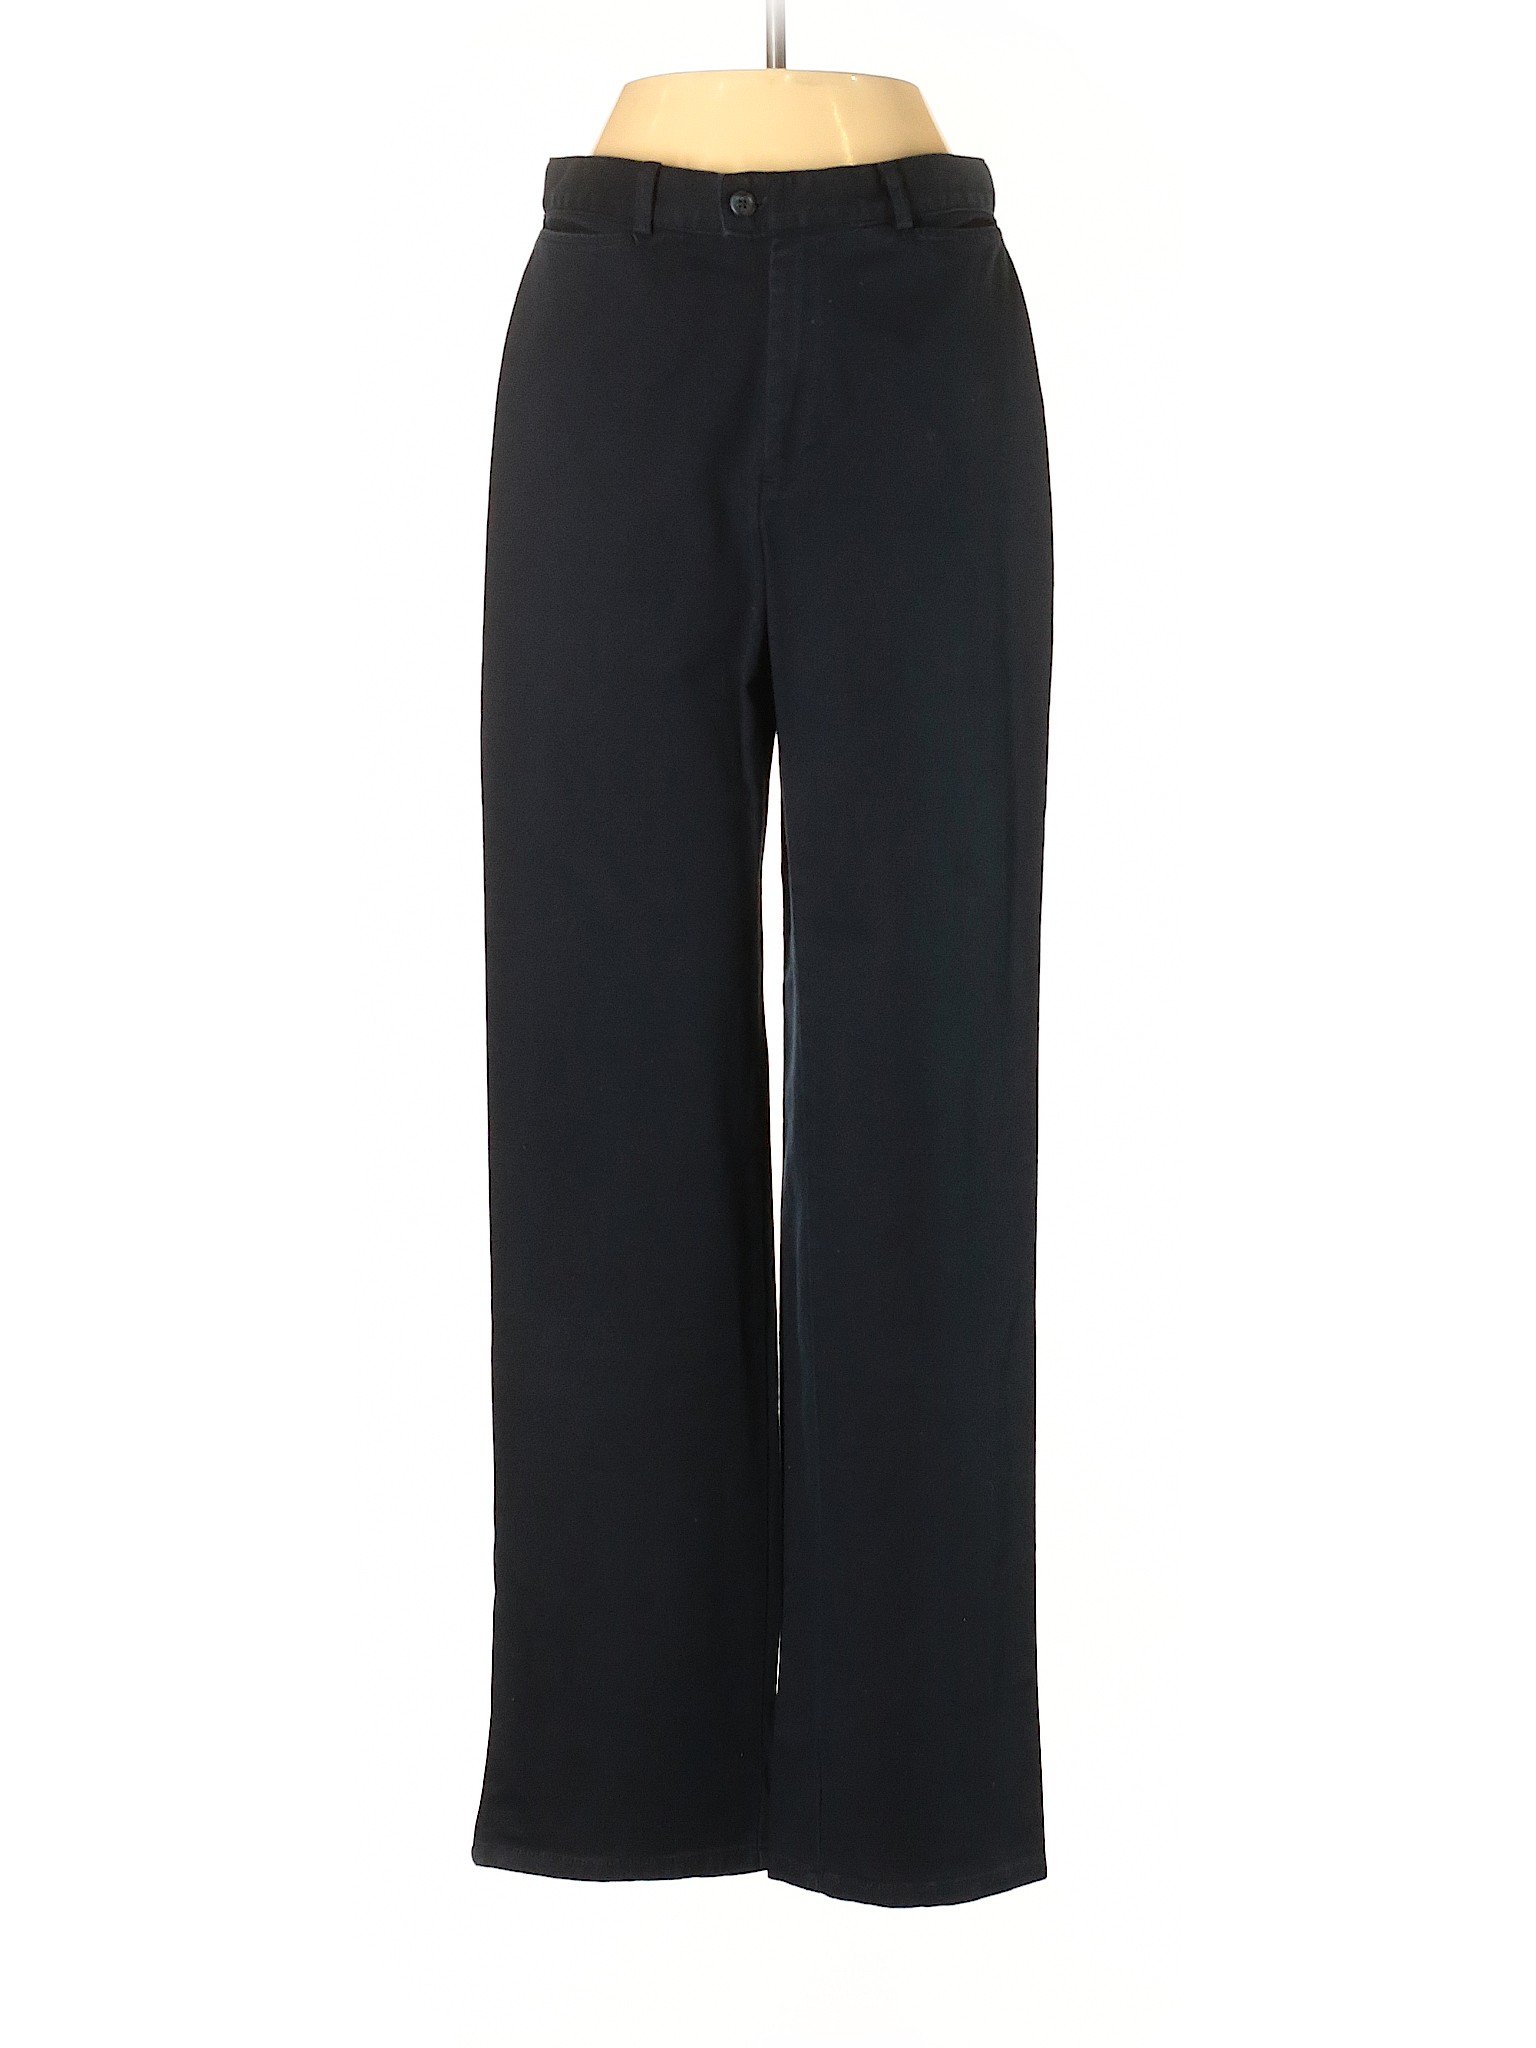 Dockers Women Black Casual Pants 6 | eBay